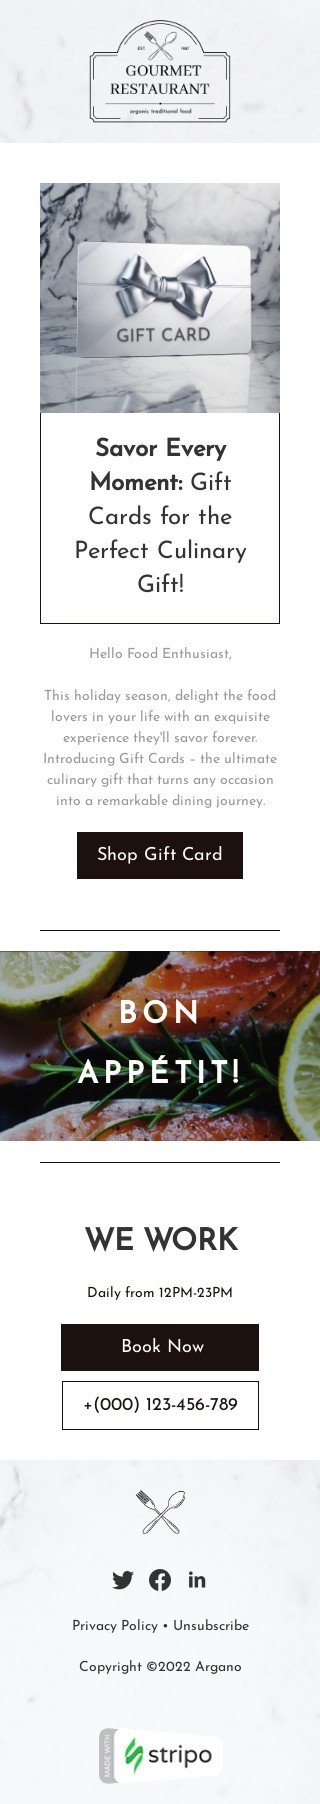 Modèle de courrier électronique carte cadeau «Savourez chaque instant» pour le secteur restaurants Affichage mobile